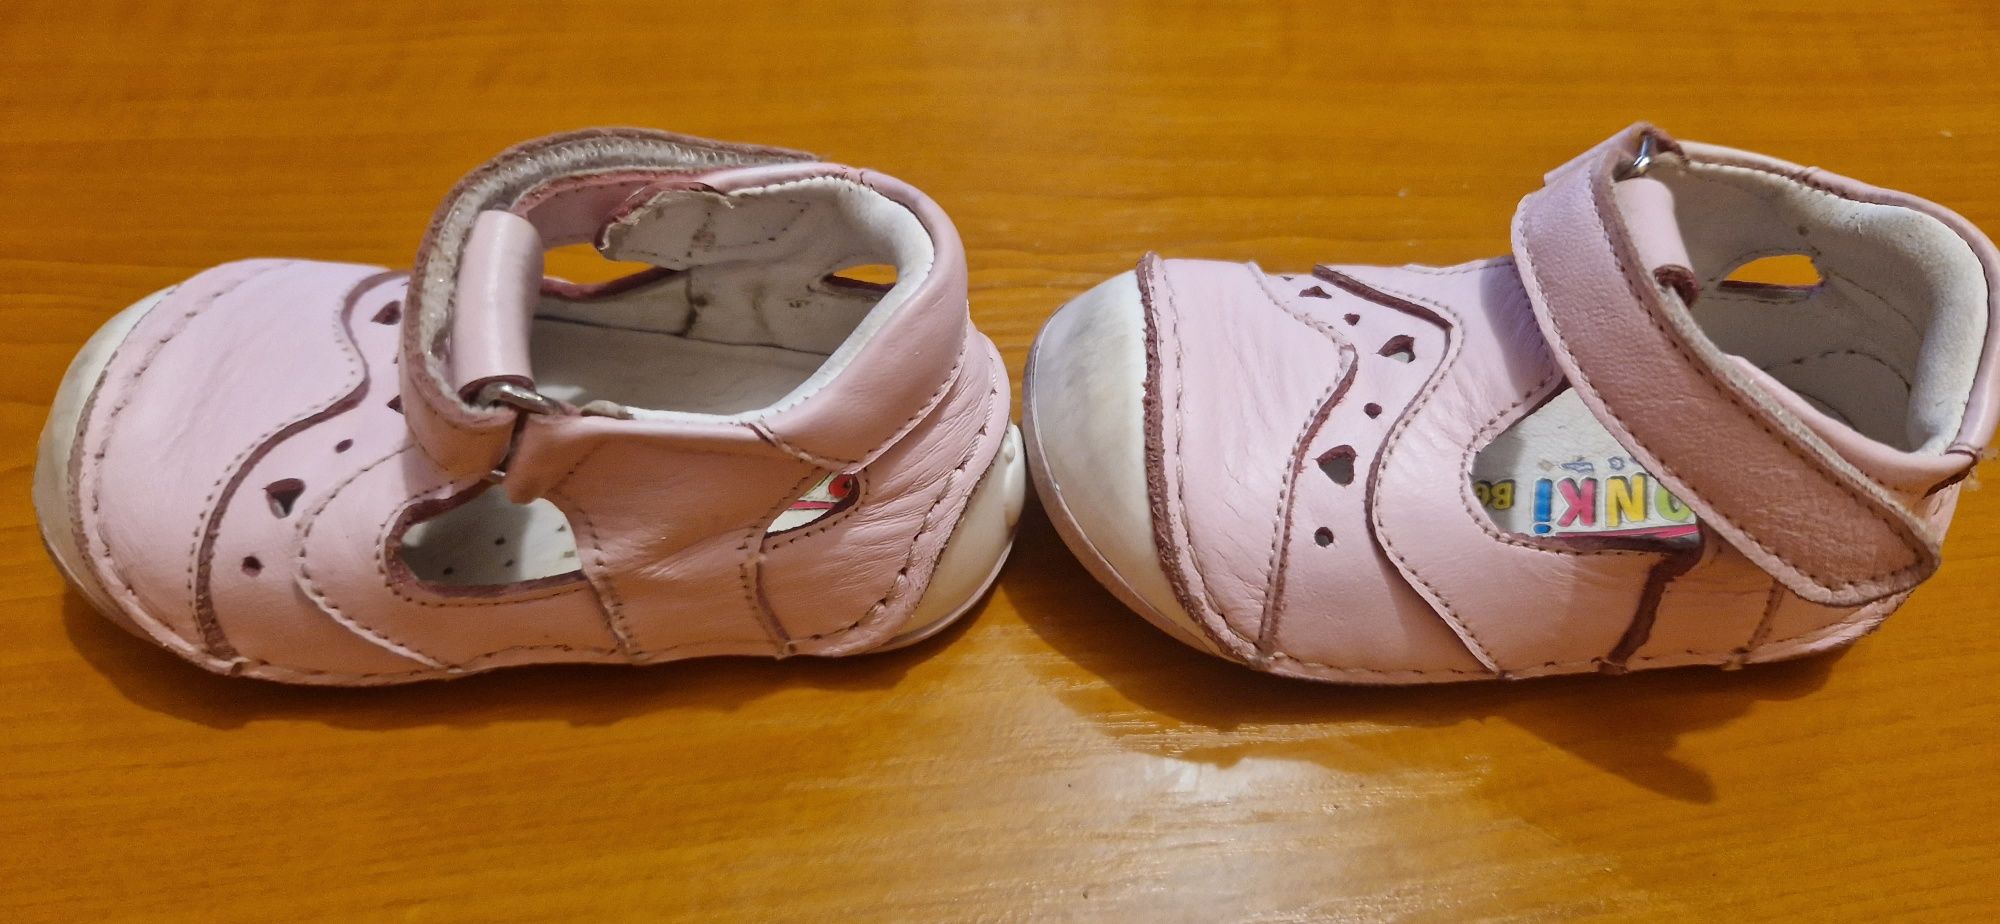 Бебешки обувки боса серия Ponki 19н